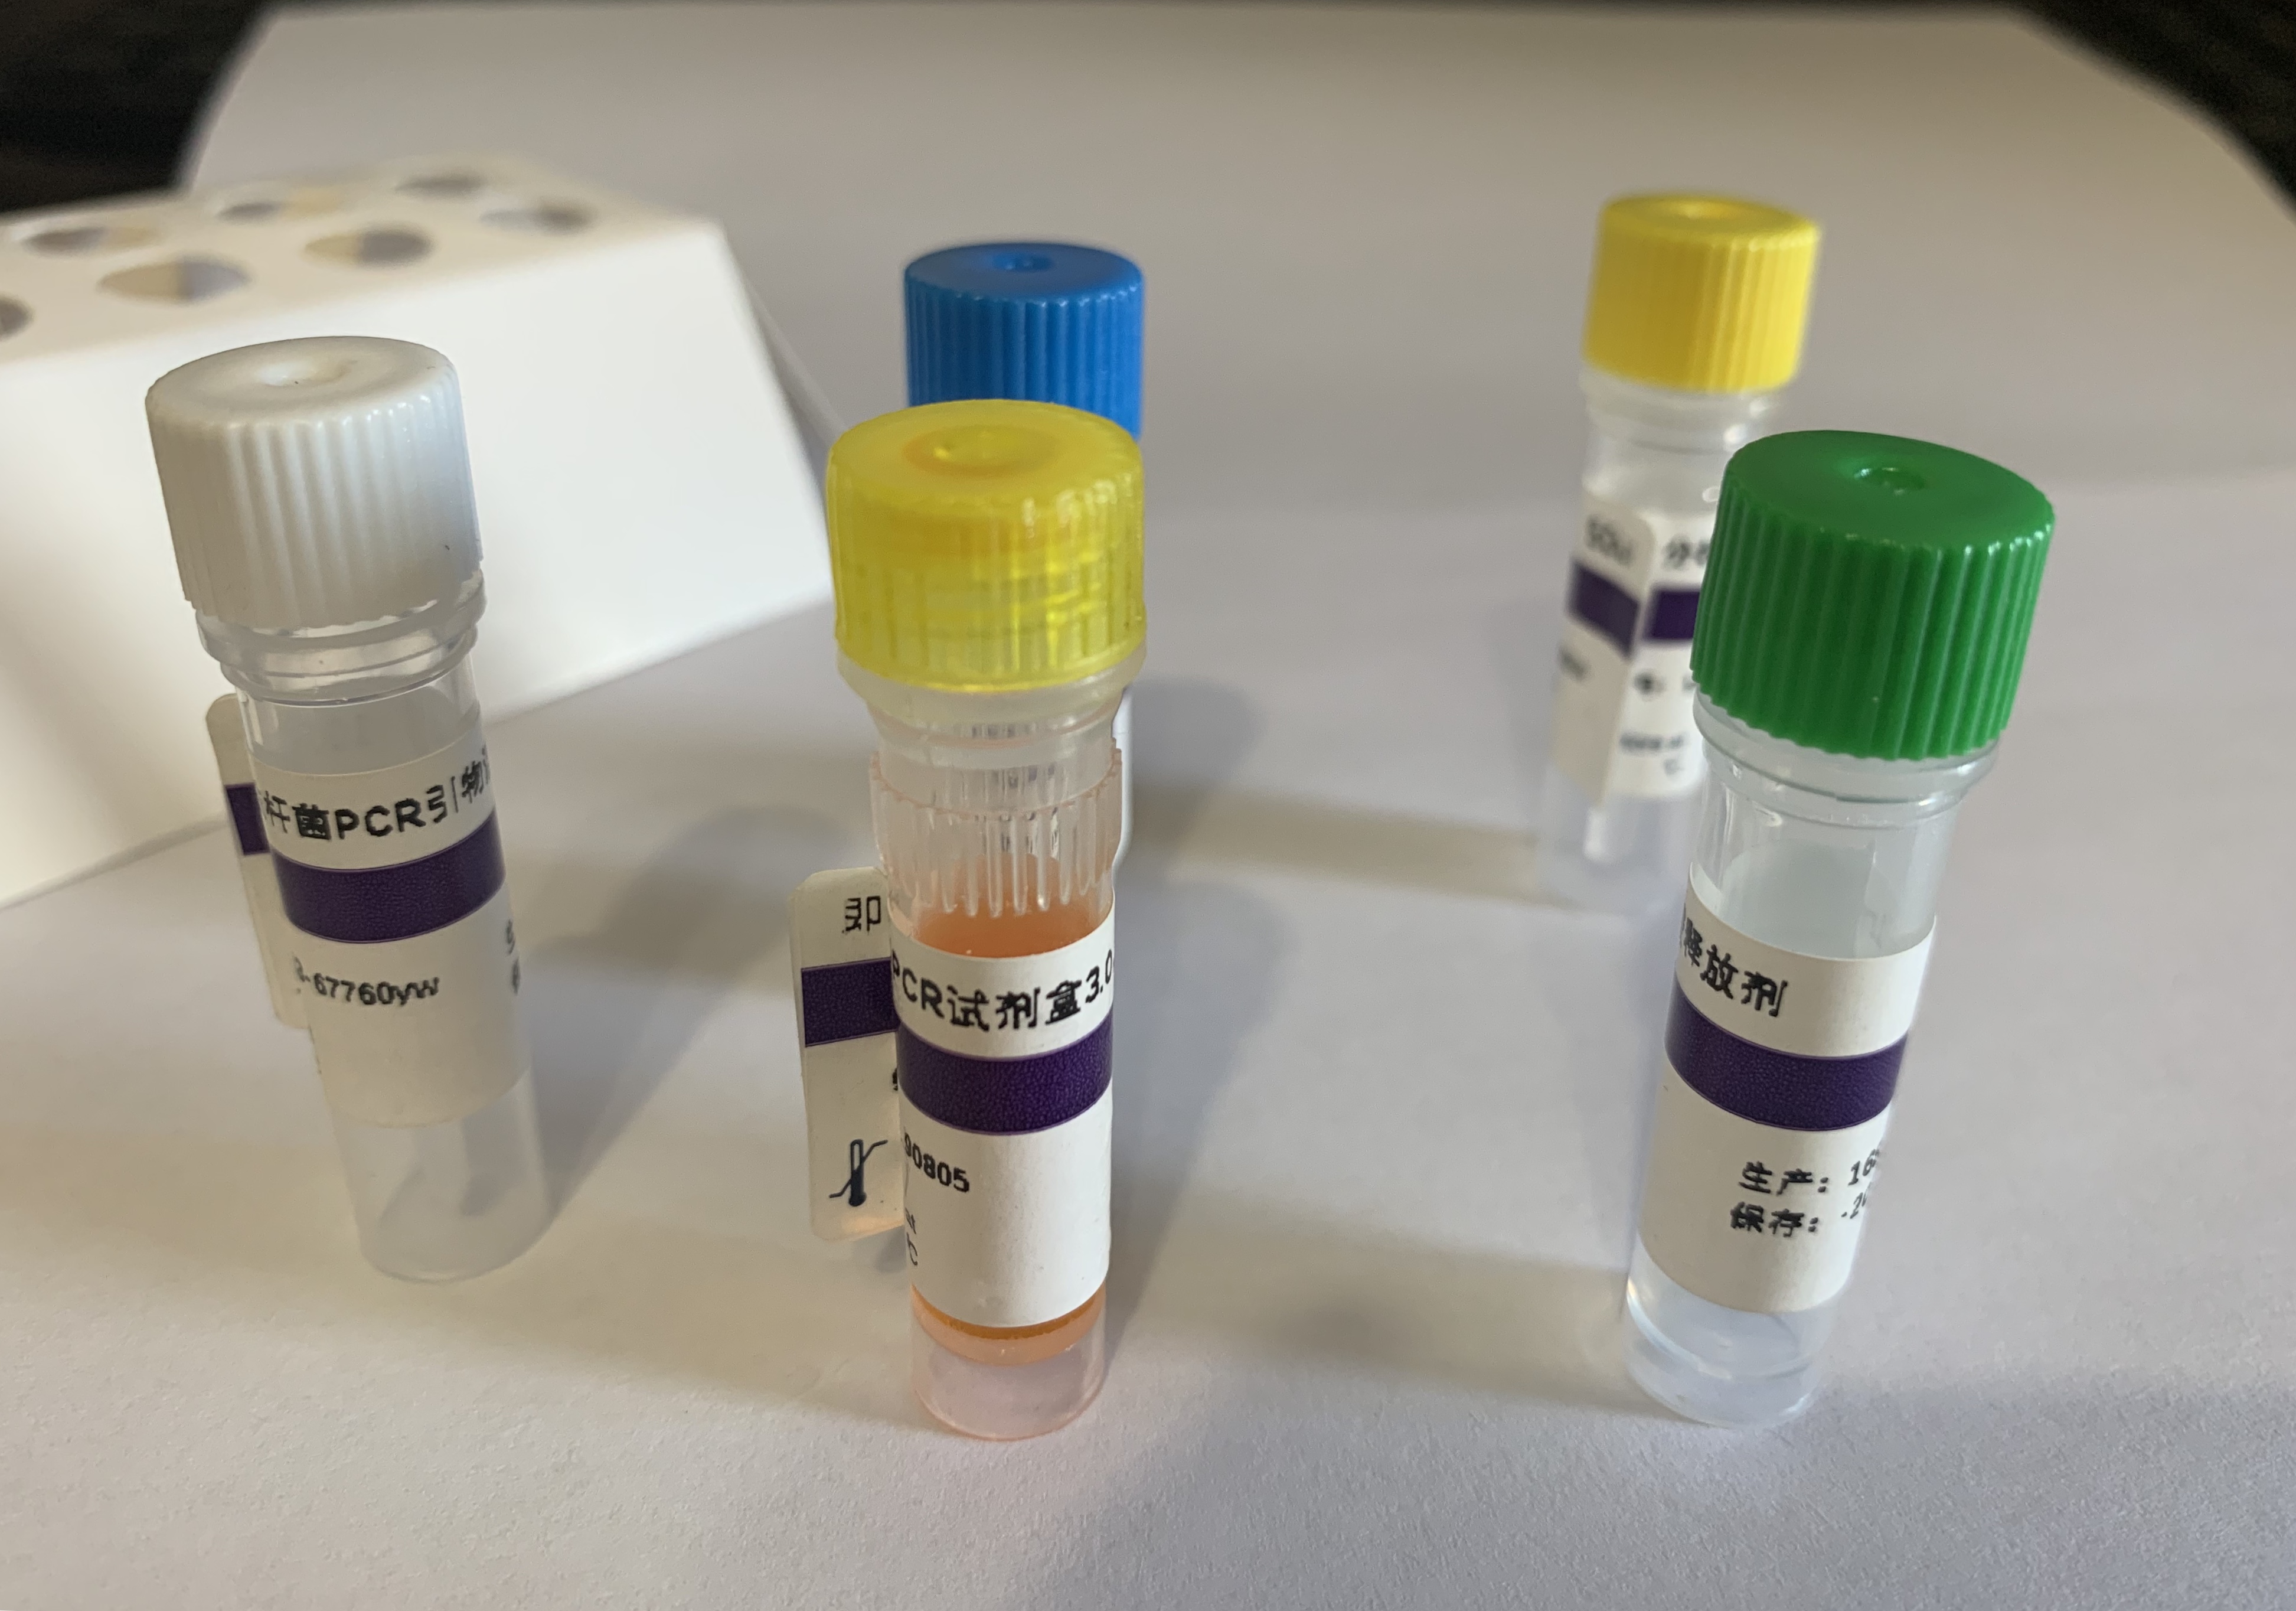 武氏盾螨探针法荧光定量PCR试剂盒